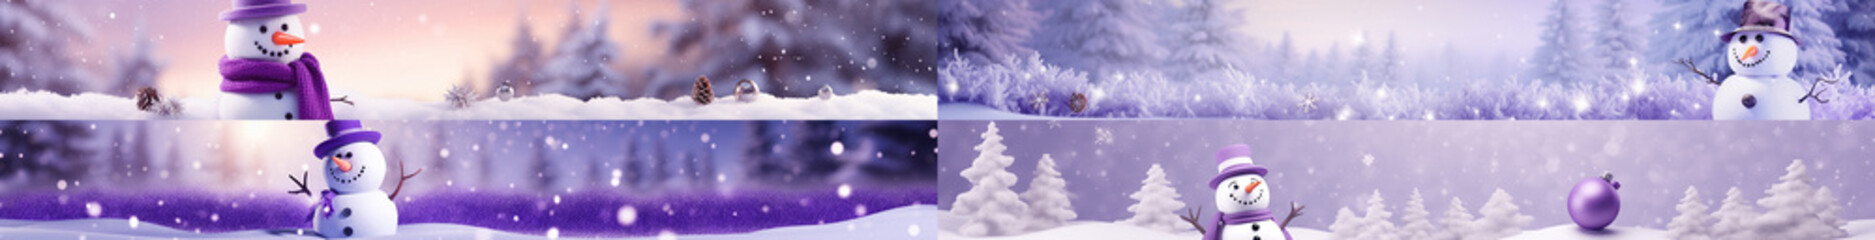 イメージカラー紫の雪だるまの背景用素材セット